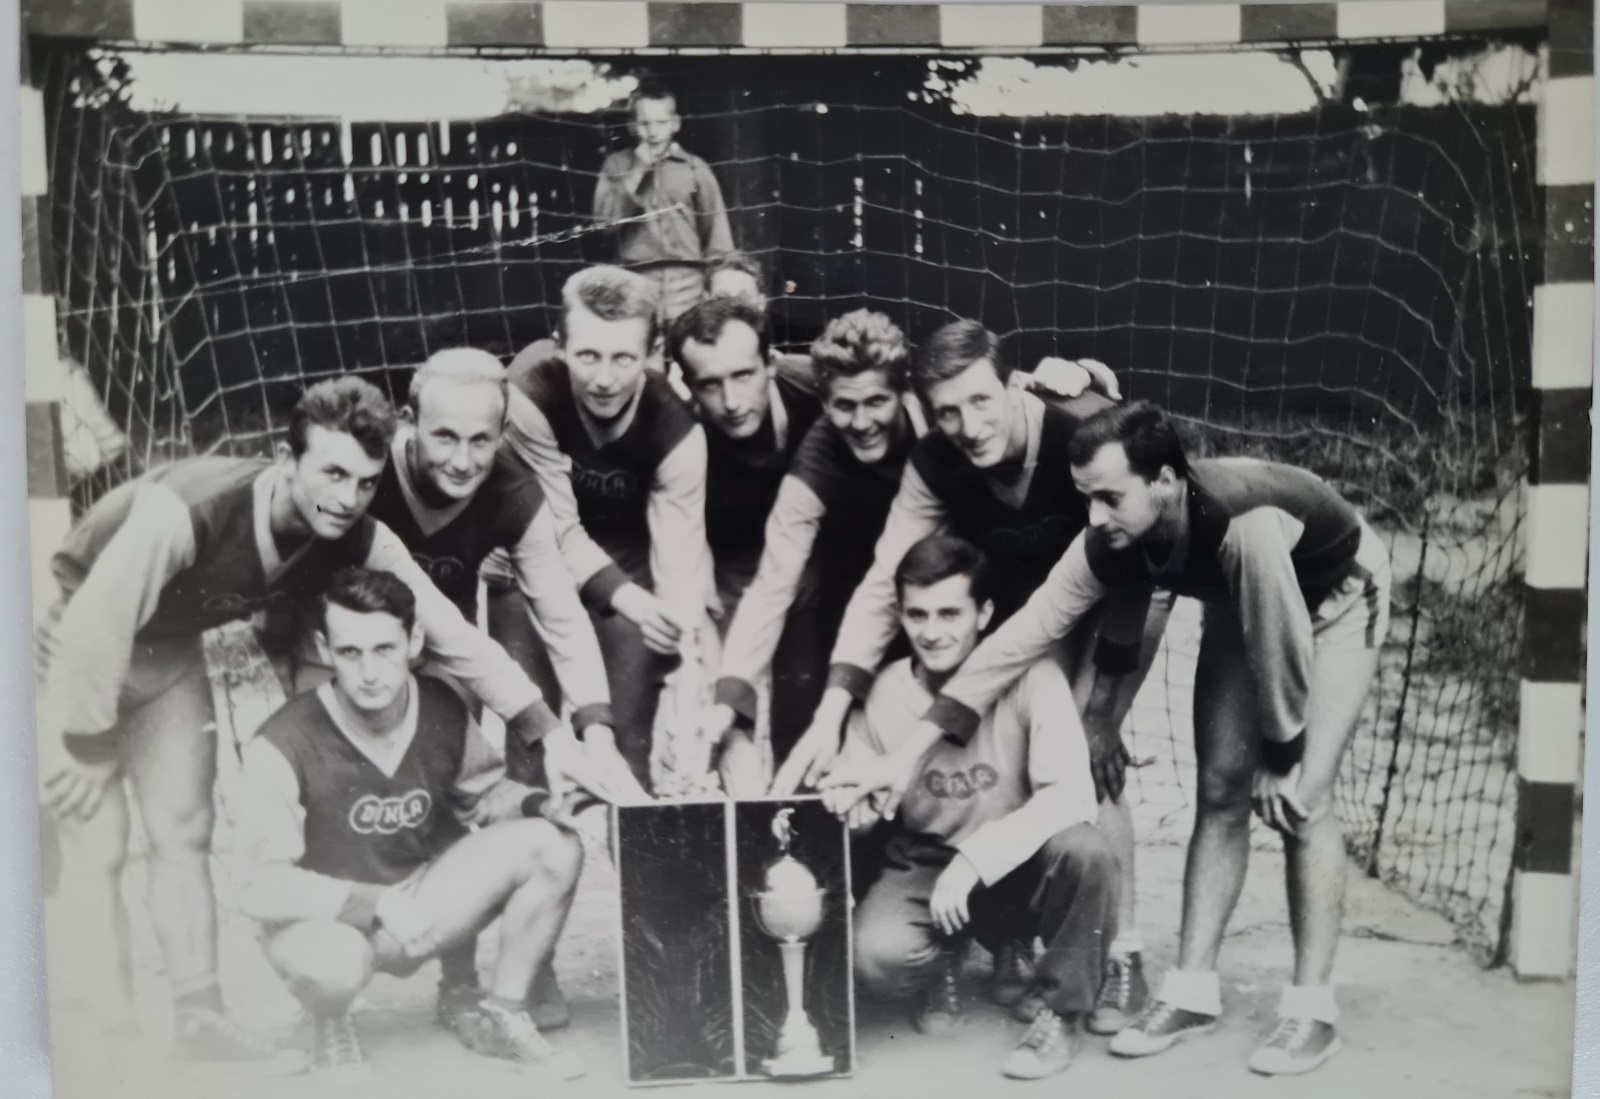 1962, vítěz poháru Dukla Janovice. V dresu Dukly i 3 hráči Bělé J.Malý, Chadalík a Špringl, toho času na vojně.